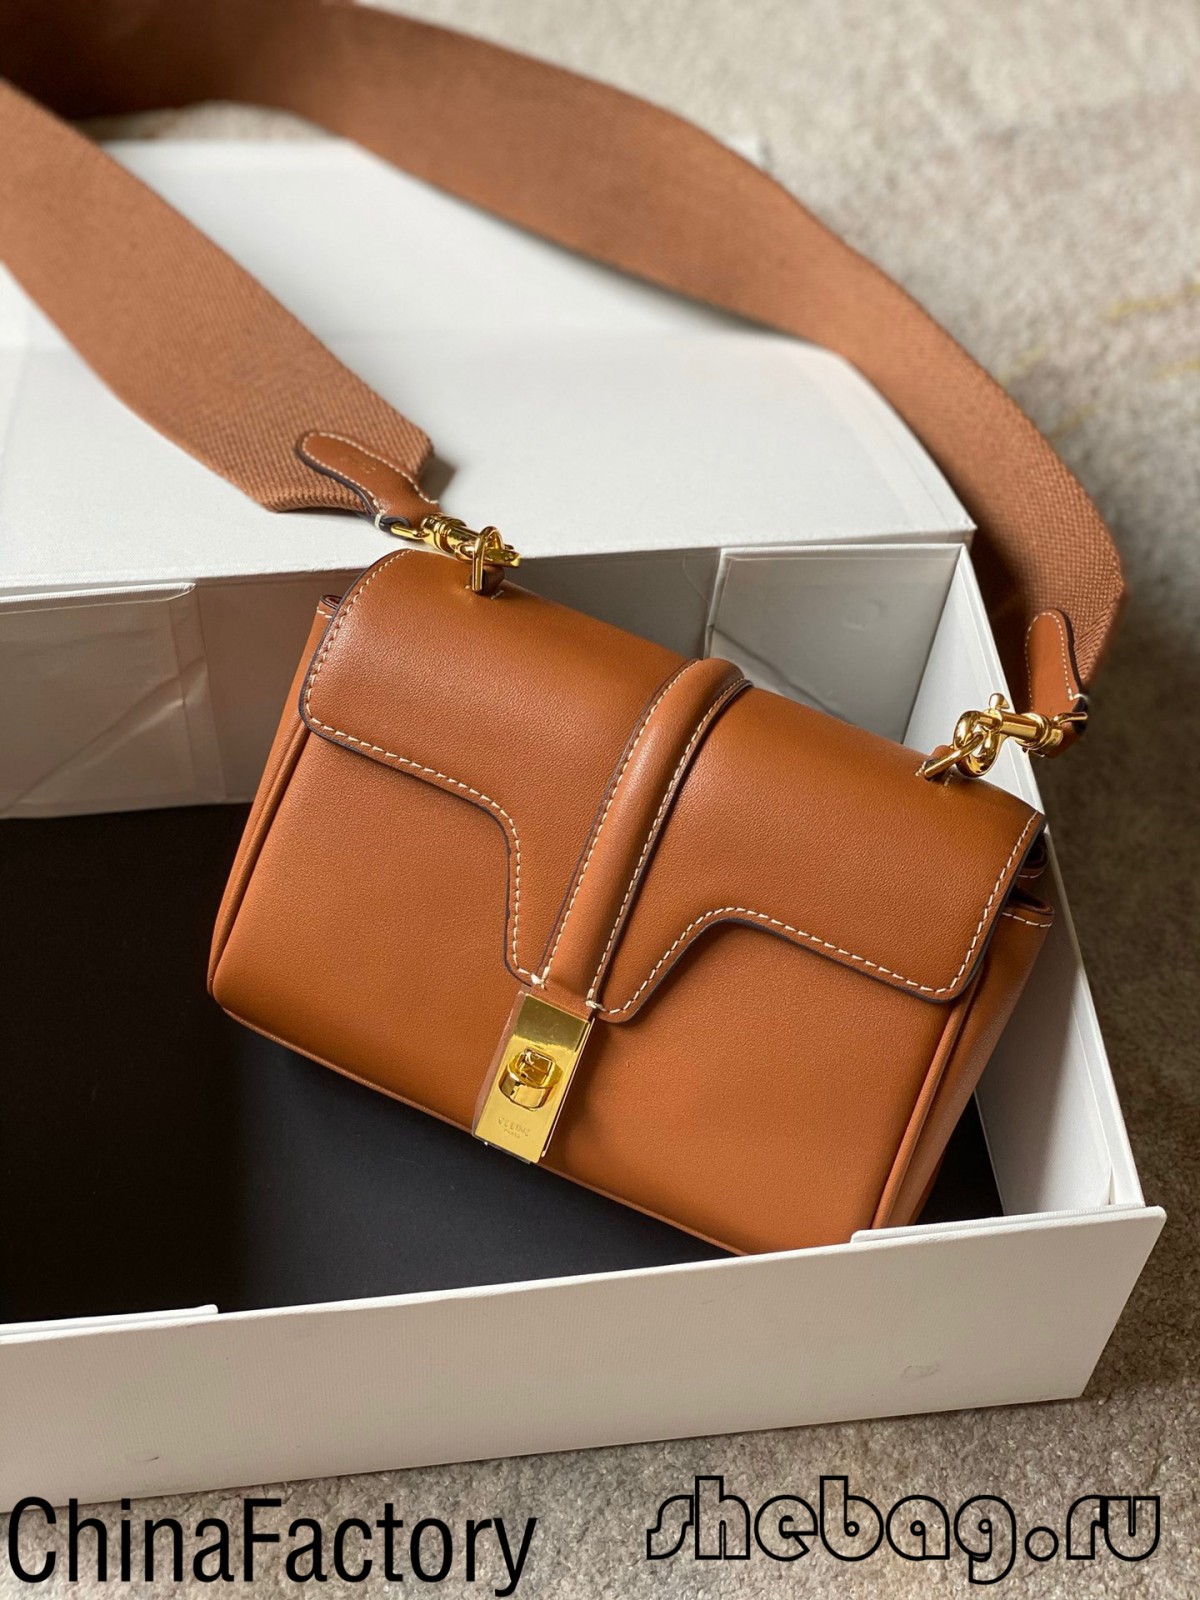 Hol találom a legjobb replika Celine táskákat: Celine Tabou (2022 legfrissebb) - A legjobb minőségű hamis Louis Vuitton táska online áruház, Replica designer bag ru